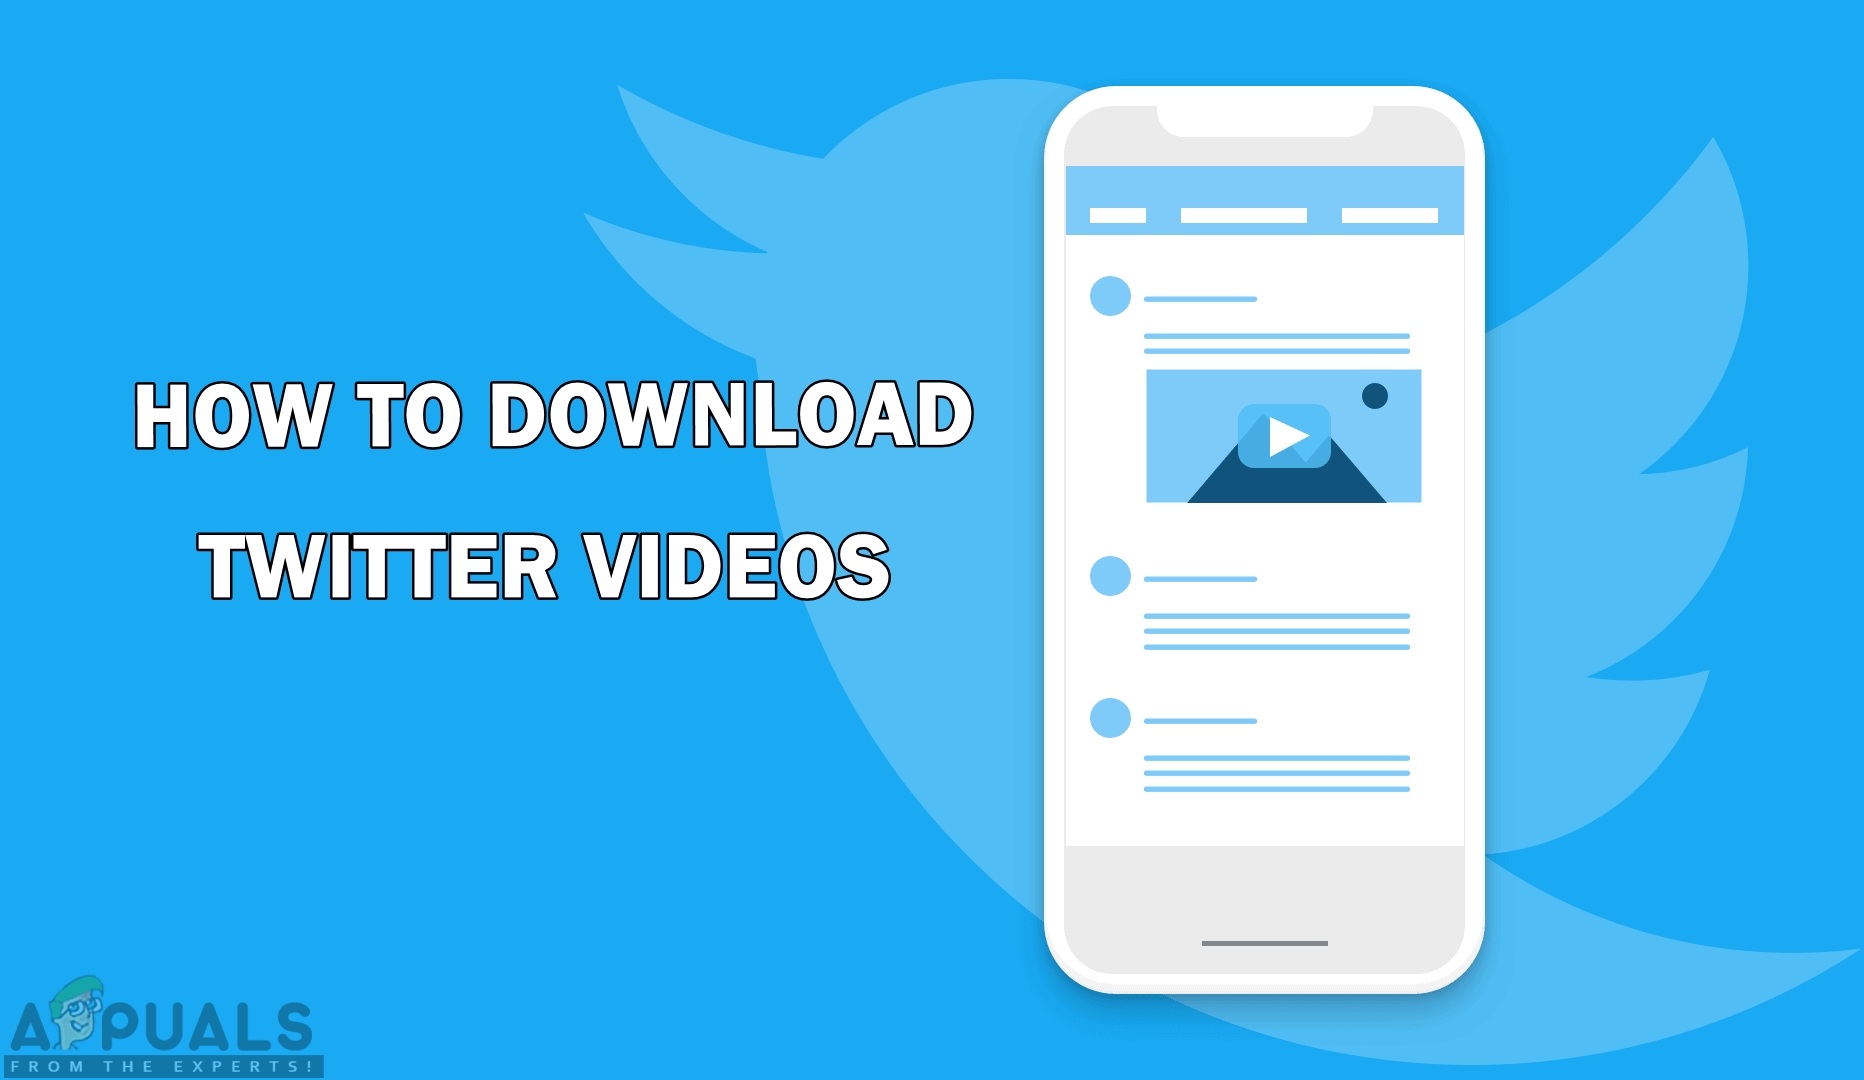 ट्विटर वीडियो कैसे डाउनलोड करें?